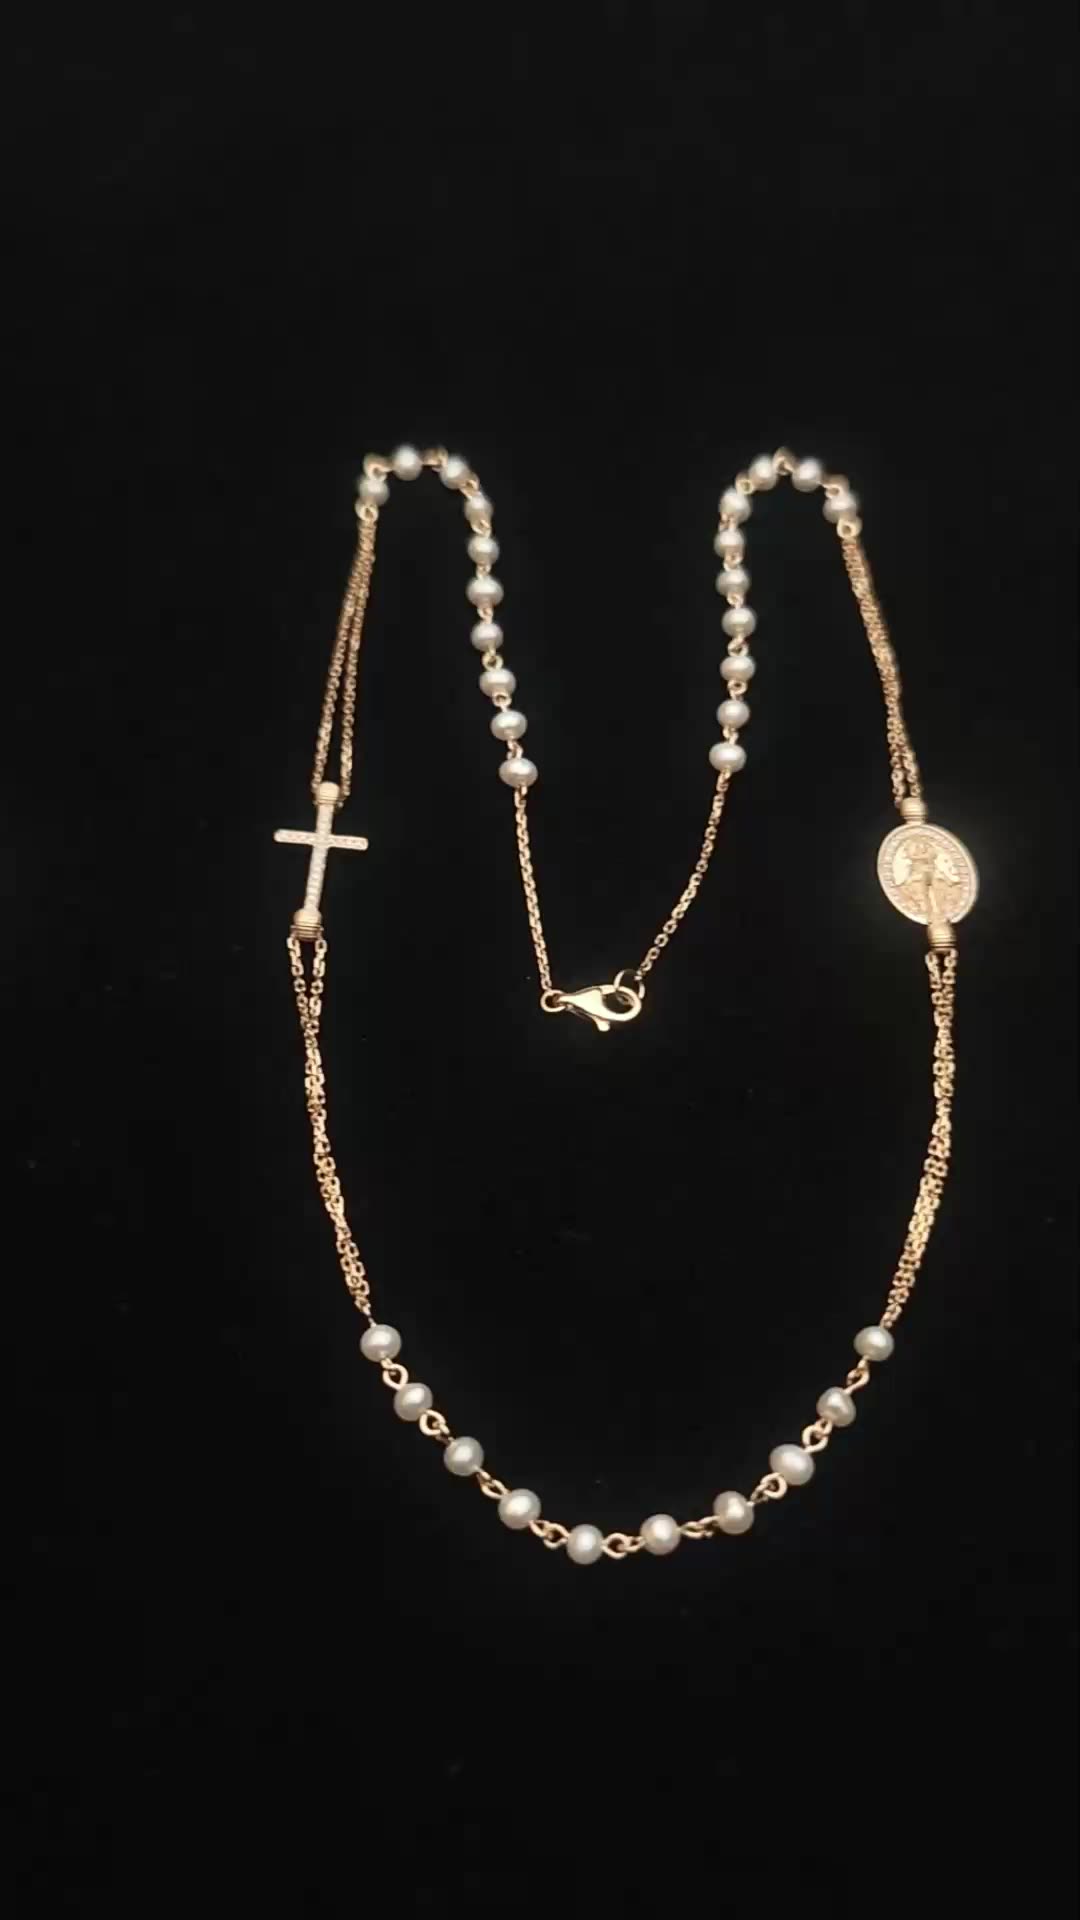 Модный кросс религиозный ювелирный персонаж Иисус овальный бренд подвесной ожерелье 9K Сплошное золотое жемчужное колье 1